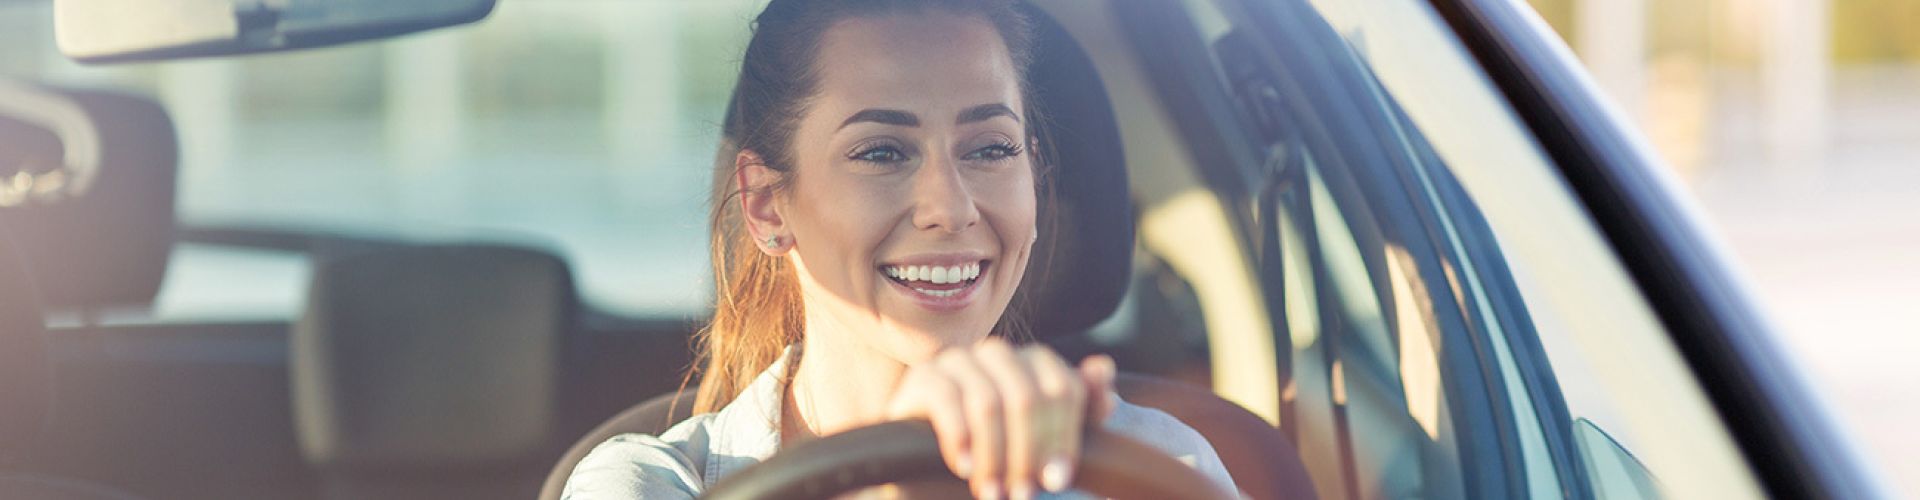 Femme heureuse avec un sourire au volant d'une voiture